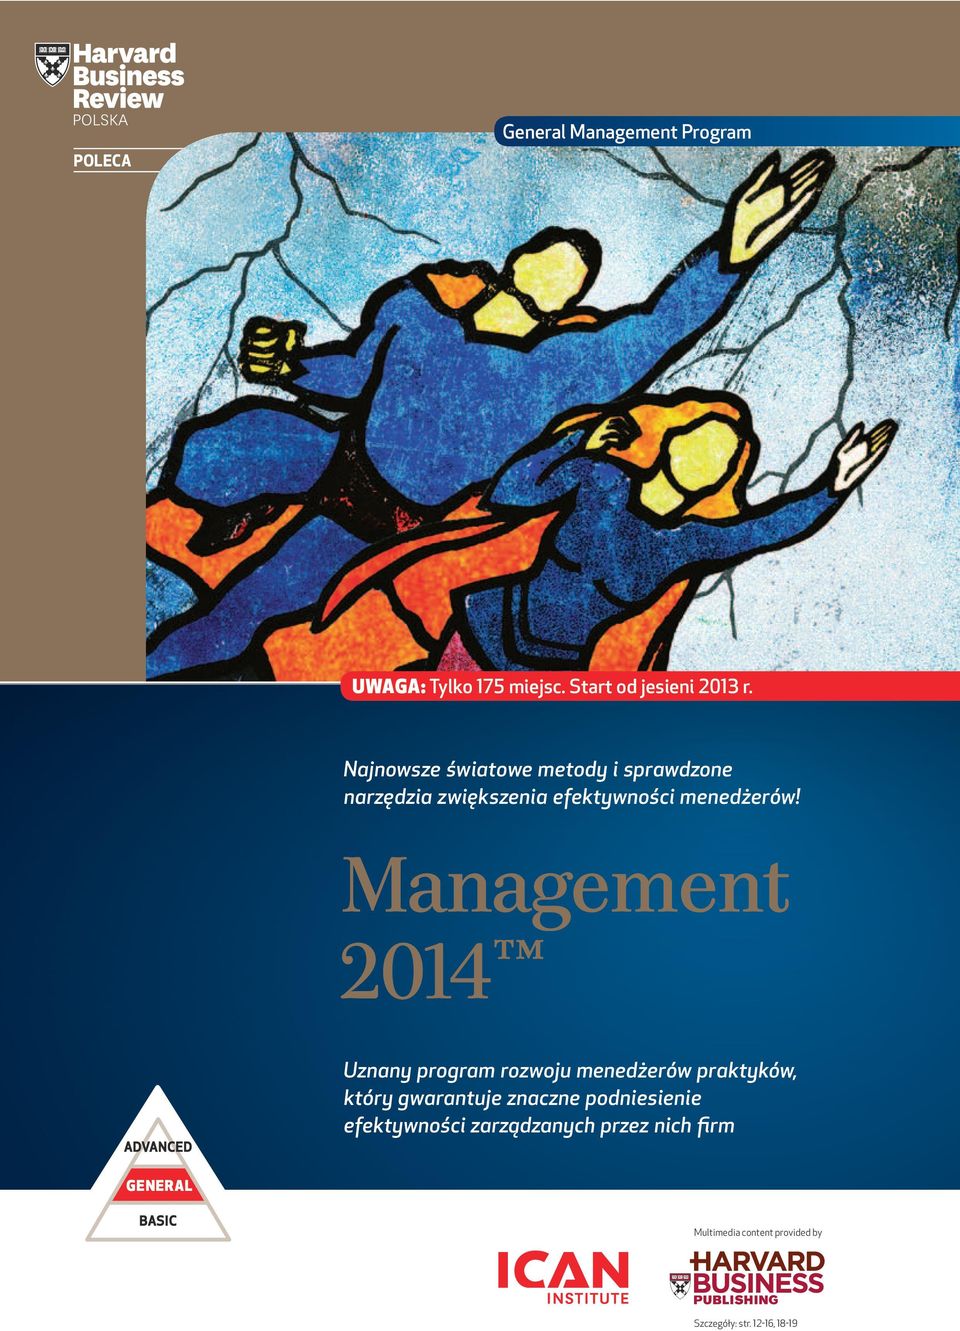 Management 2014 ADVANCED Uznany program rozwoju menedżerów praktyków, który gwarantuje znaczne